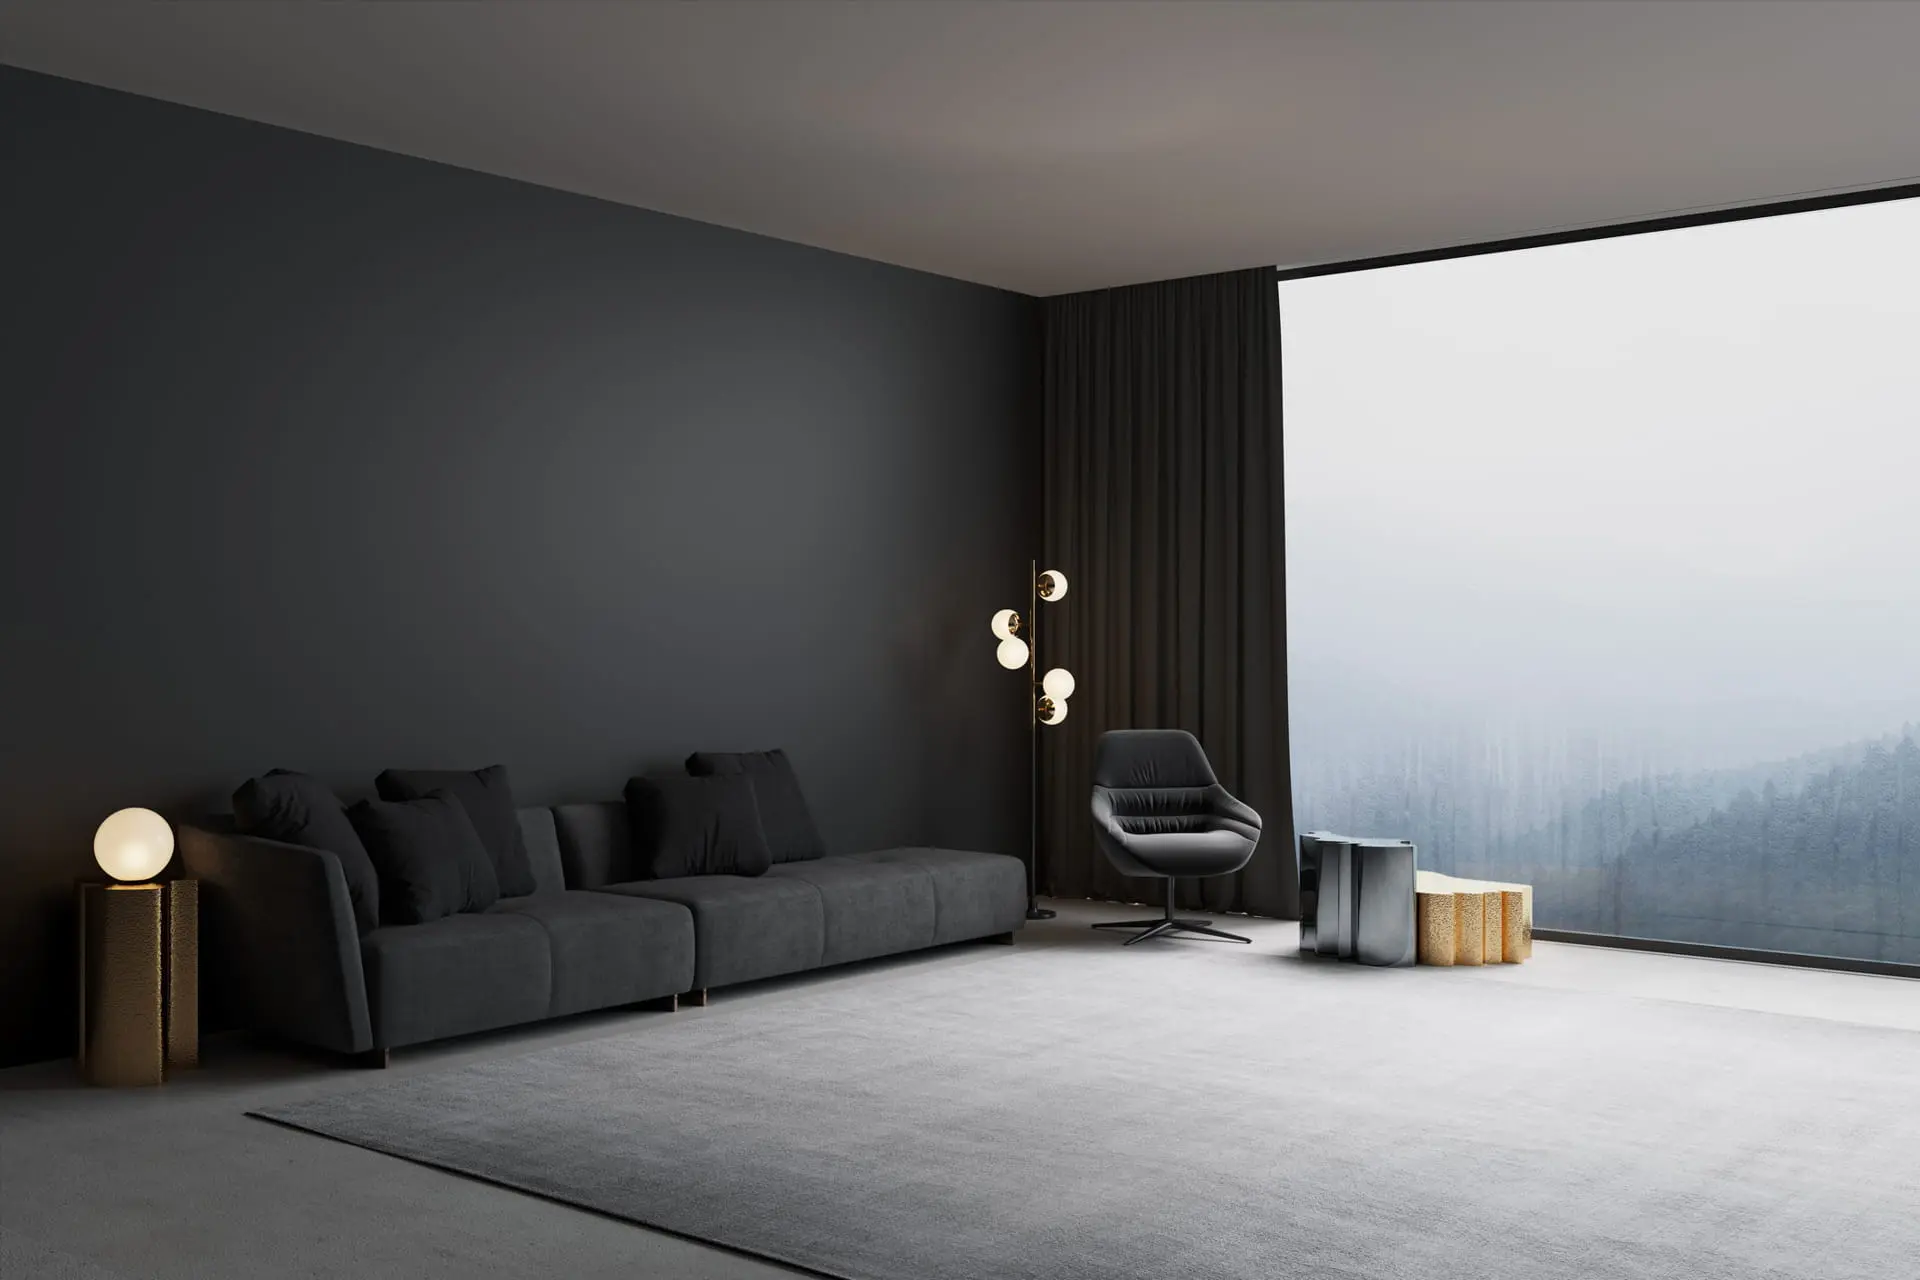 Moderna dnevna soba ukrašena mikrocementom u tamnoj boji